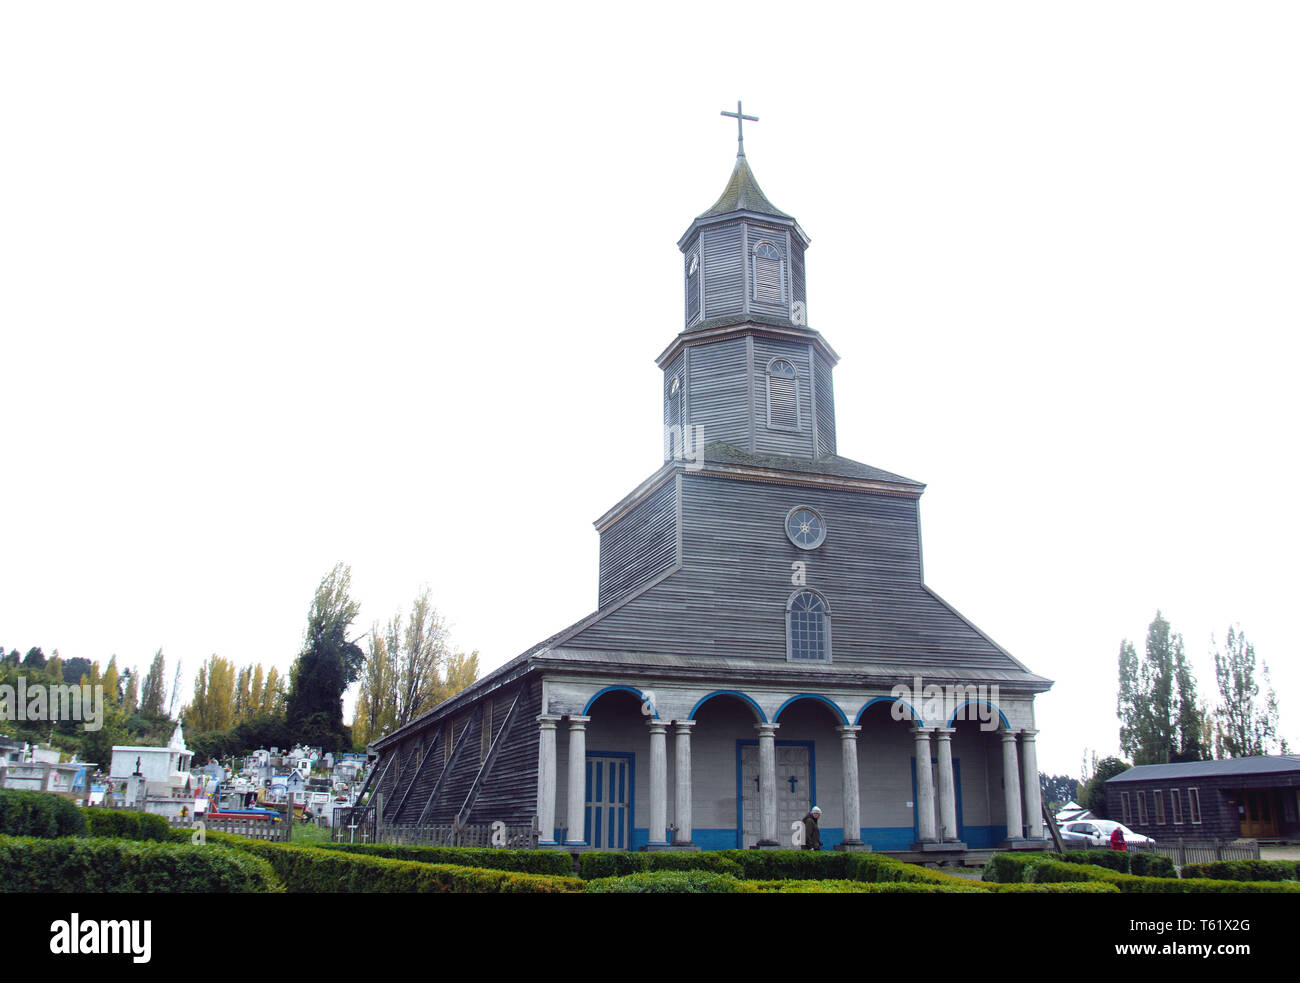 A famous wooden church, Nuestra Señora de Gracias, in Nercon village, Chiloé island, Chile Stock Photo